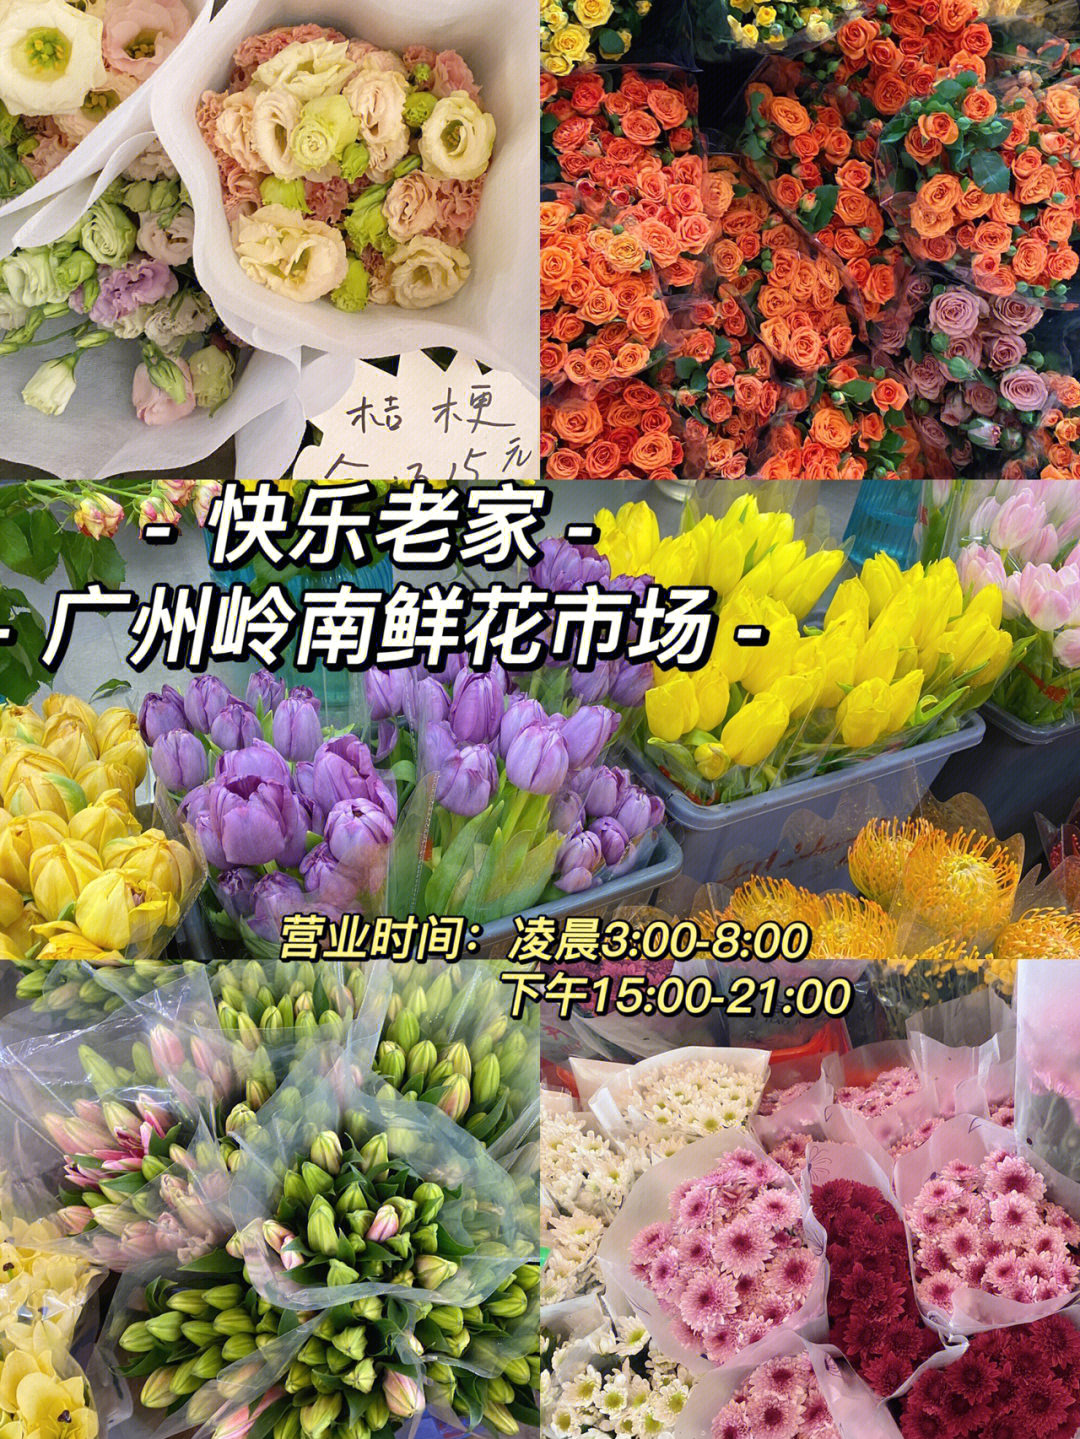 广州岭南鲜花市场b区全是卖鲜切花的,我今天是坐公交车去的969路车